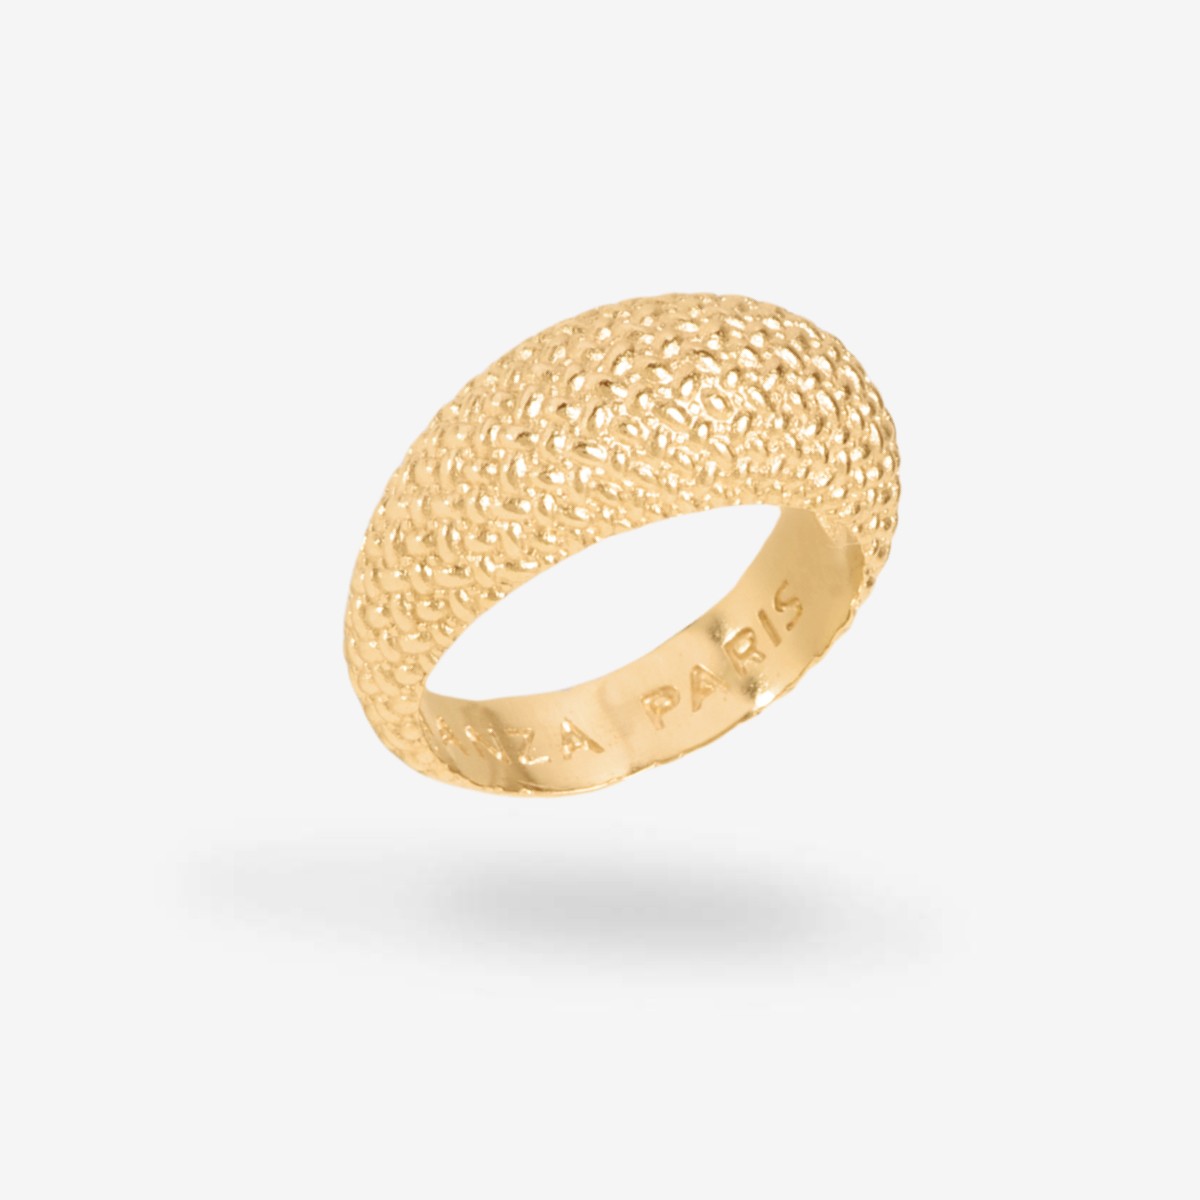 Mini-Gisèle Ring - Ringe - 24k vergoldet